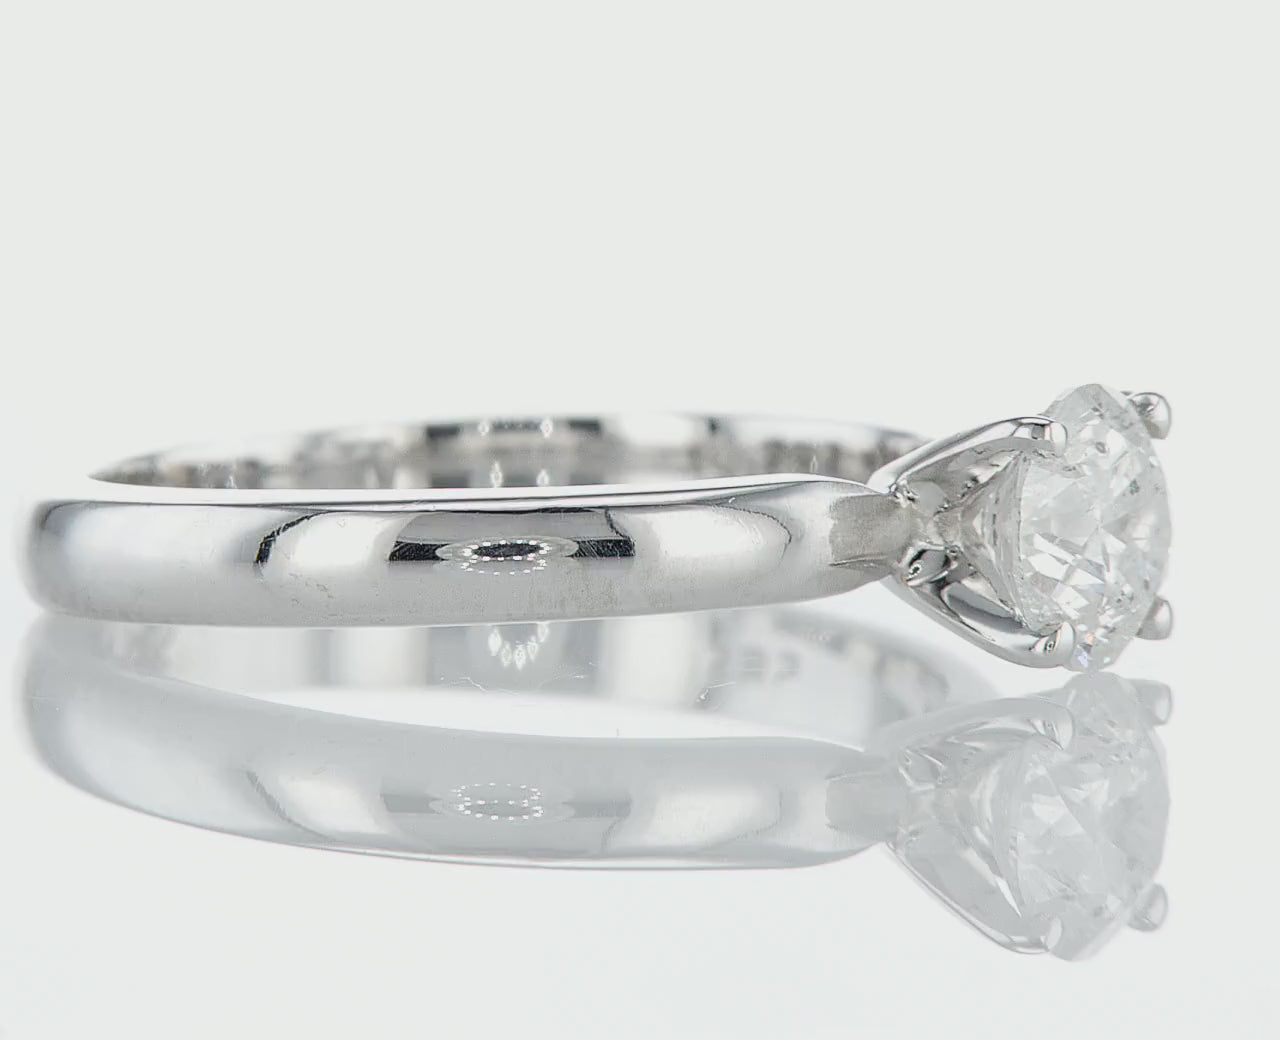  טבעת אירוסין טבעת עם יהלום טבעי  גדול, זו היא יצירת אומנות עדינה, שנוצרה עם תשומת לב לכל הפרטים הקטנים. משובצת במרכזה יהלום טבעי שמניח עליה אור חי ובהיר. העיצוב הנקי והאלגנטי שלה משרה אווירה של רומנטיקה בלתי נשכחת. טבעת יפה העלות מול התמורה יוצרת סינרגיה מושלמת למתנה מושלמת